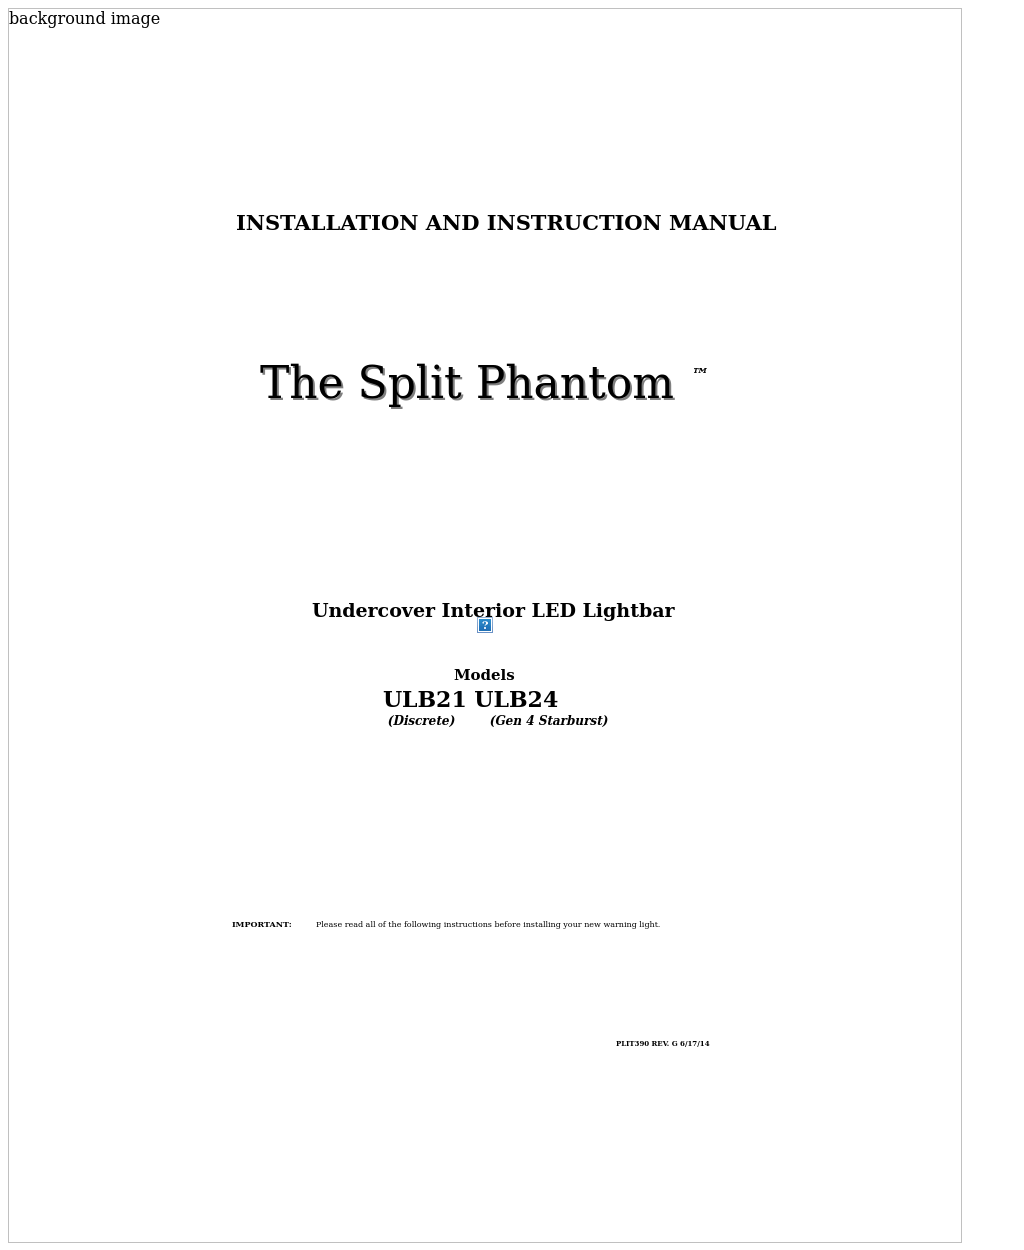 ULB24 StarBurst Split-Phantom Undercover